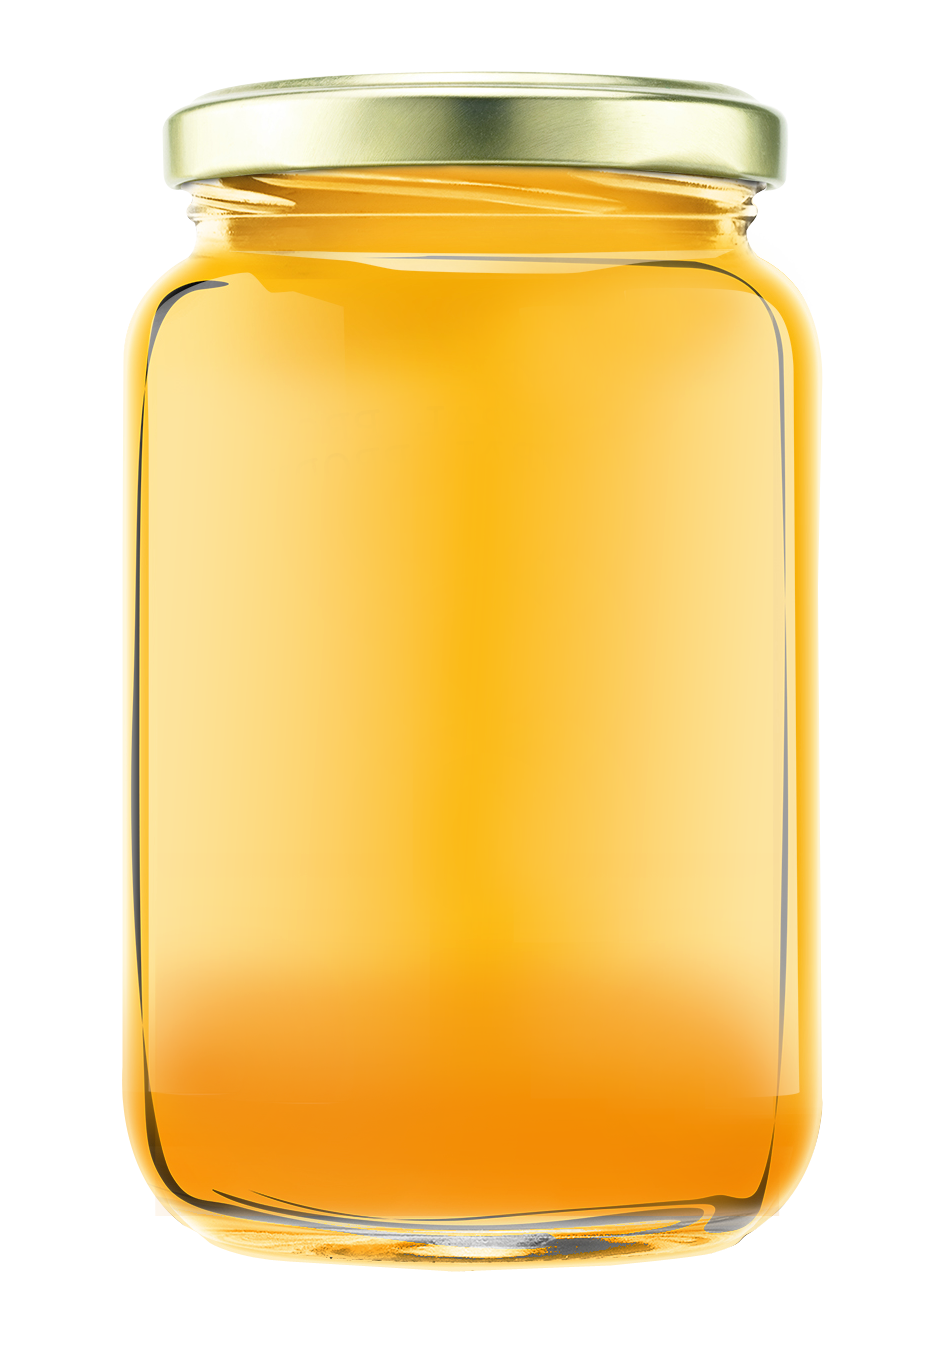 Golden Honey Jar Transparent Background.png PNG image